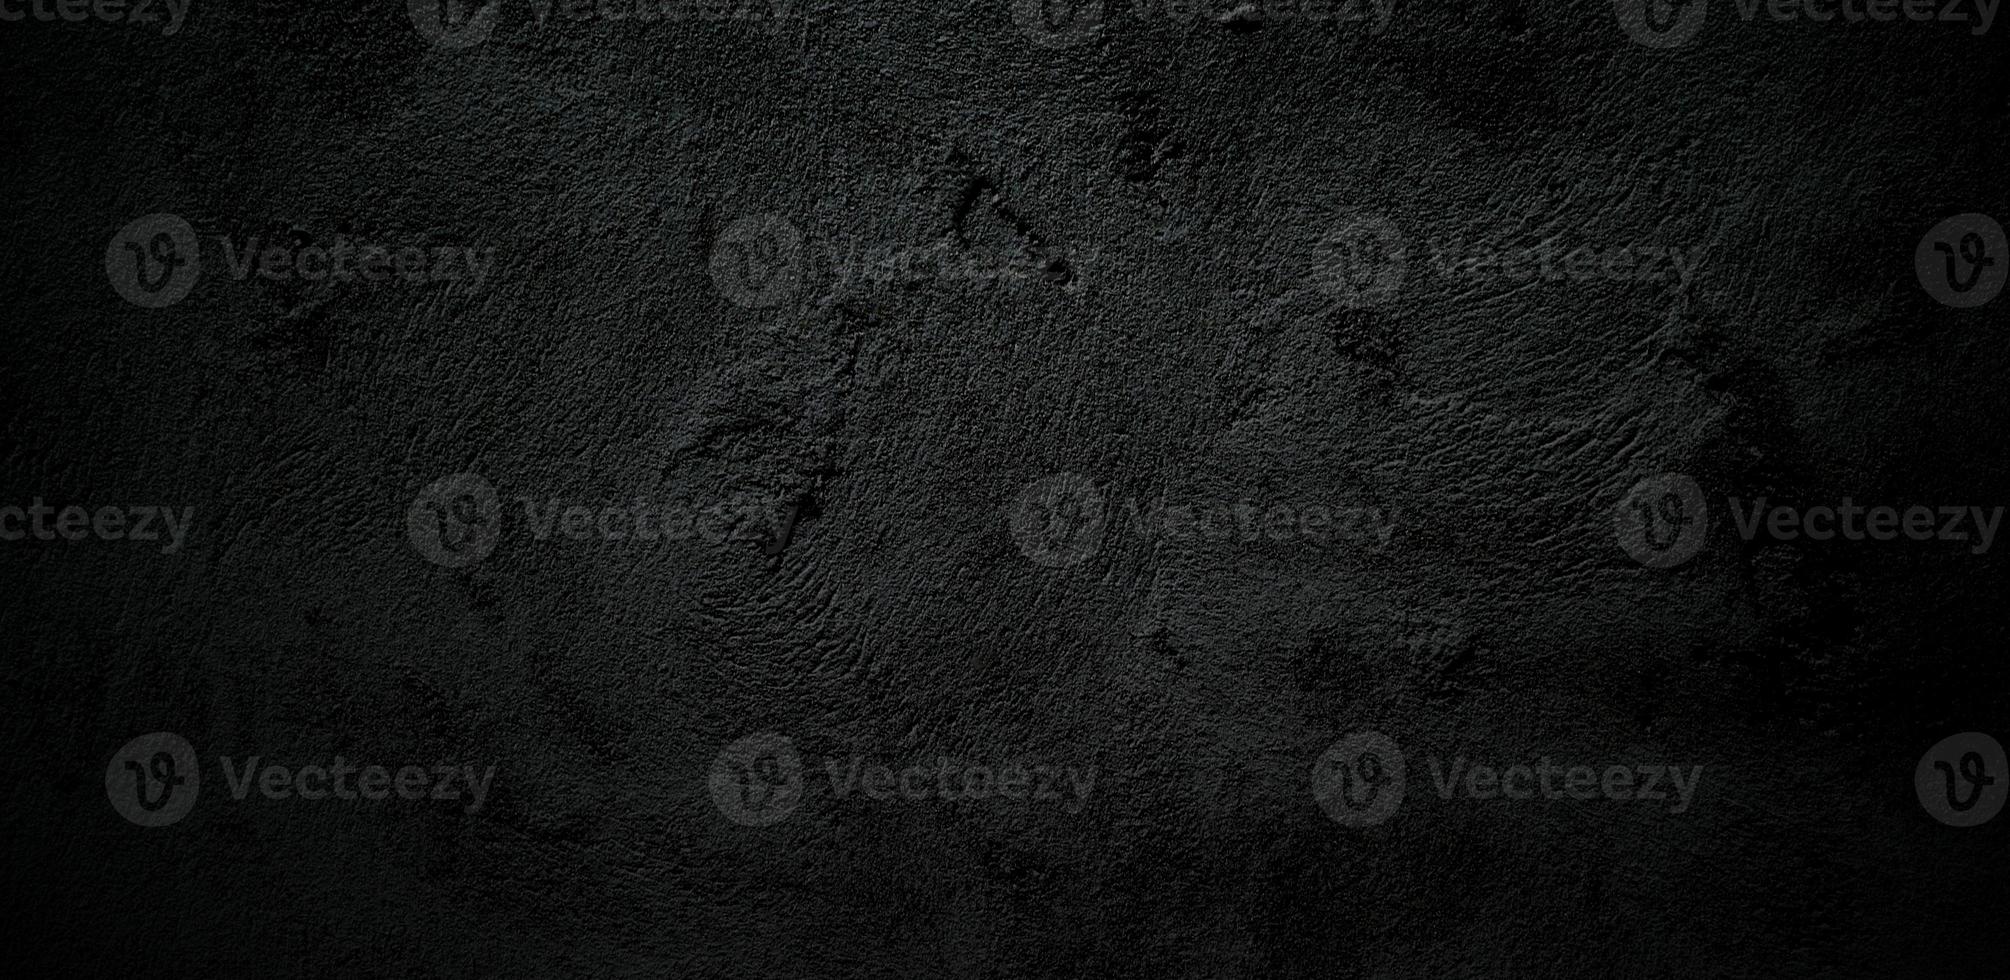 fondo de textura de hormigón de piedra negra de pared de miedo, textura de cemento de terror negro gris oscuro para el fondo foto